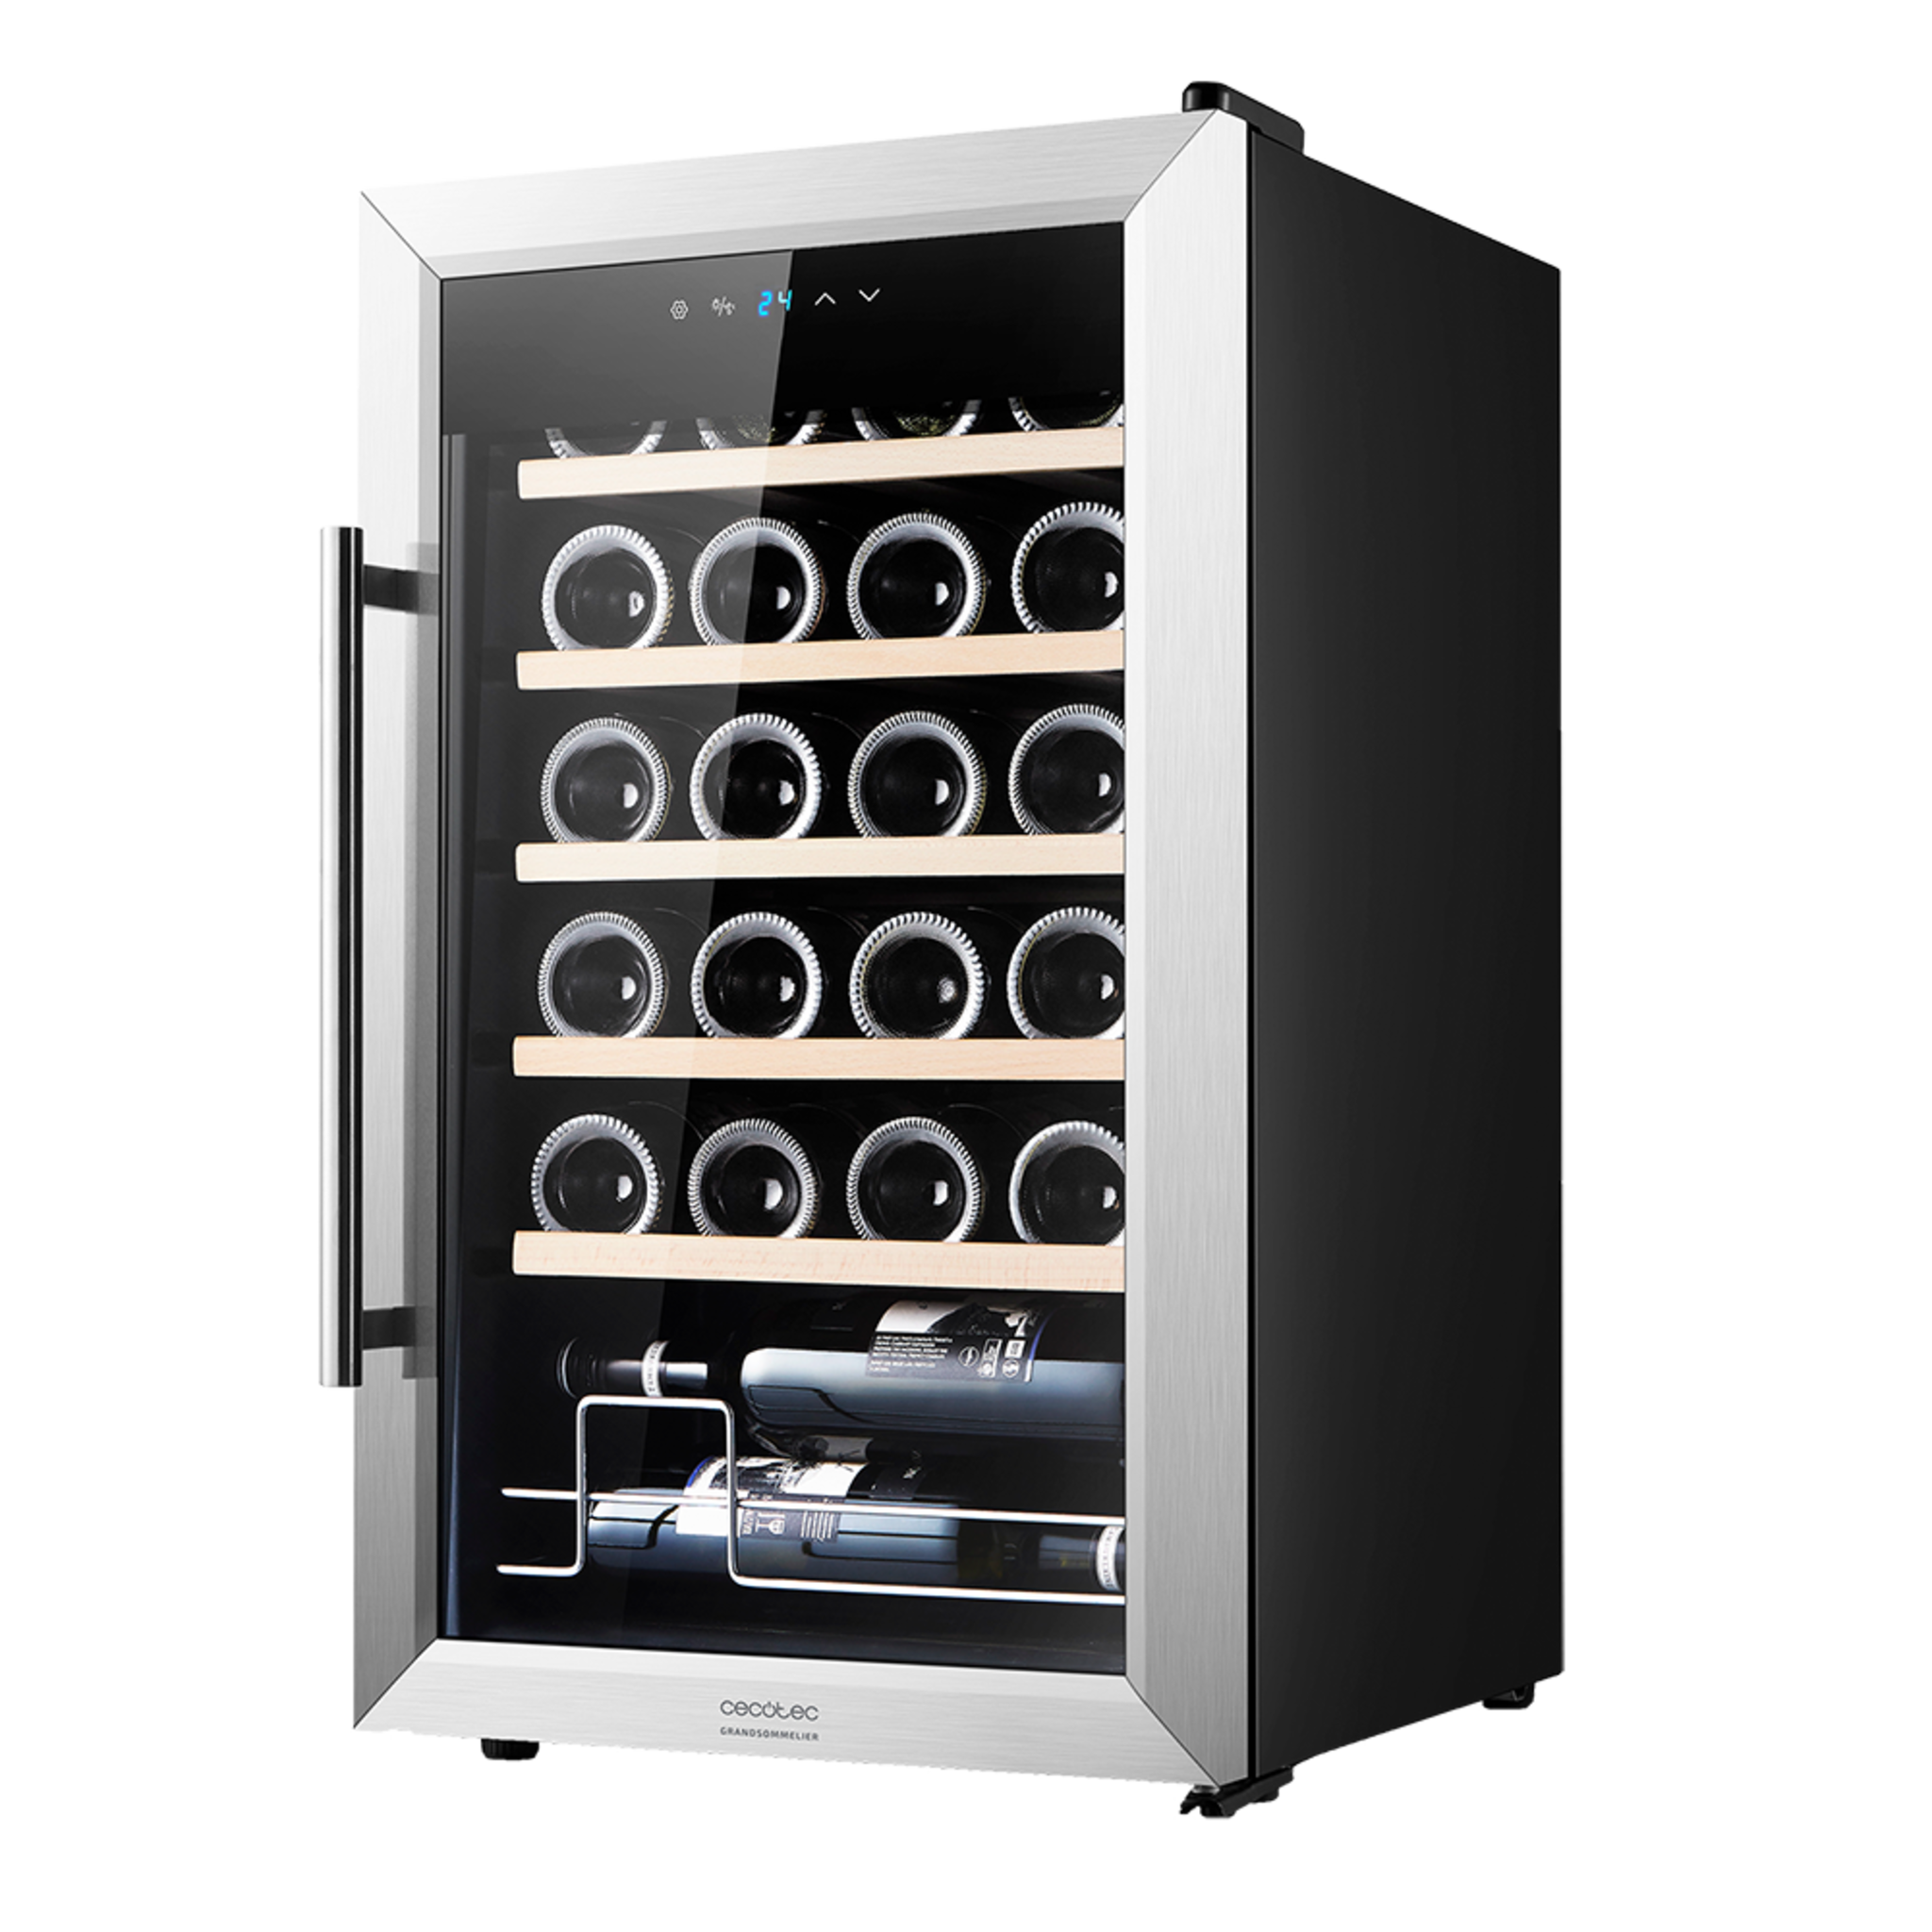 GrandSommelier 24000 INOX Compressor Weinkühlschrank. 24 Flaschen, Kompressor, garantierte hohe Leistung, einstellbare Temperatur und LED-Innenbeleuchtung.